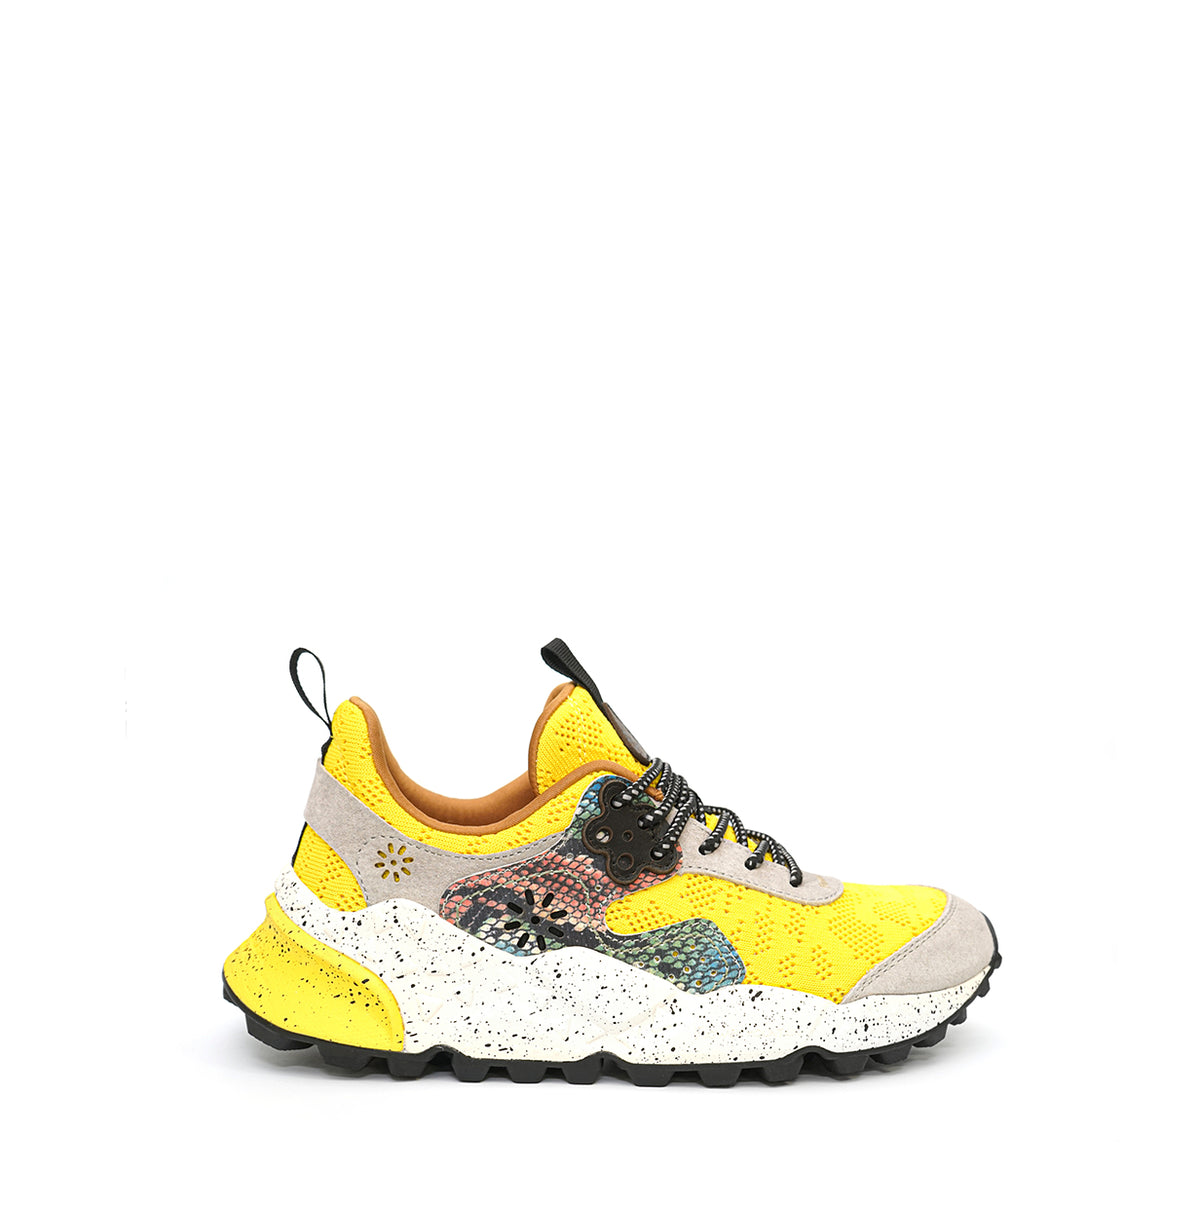 flower sneakers